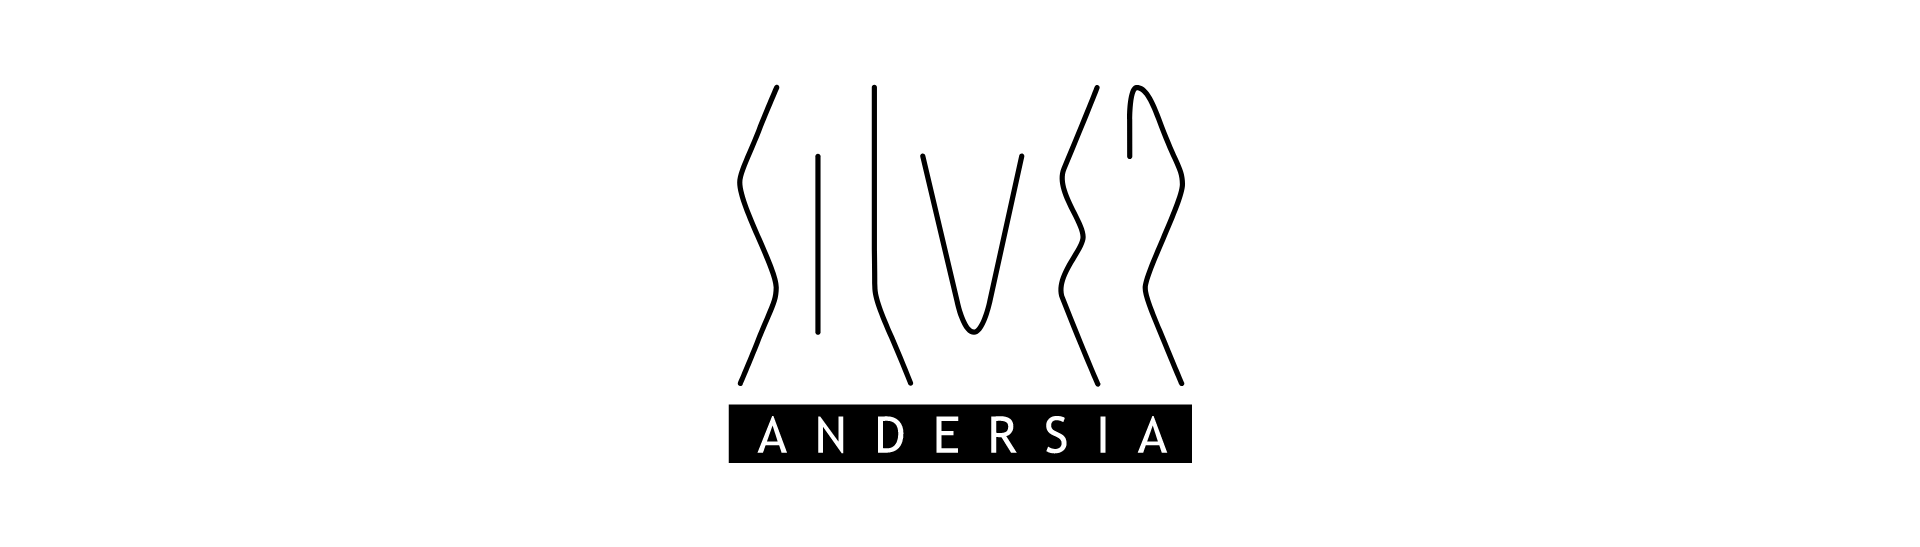 Andersia Silver logo